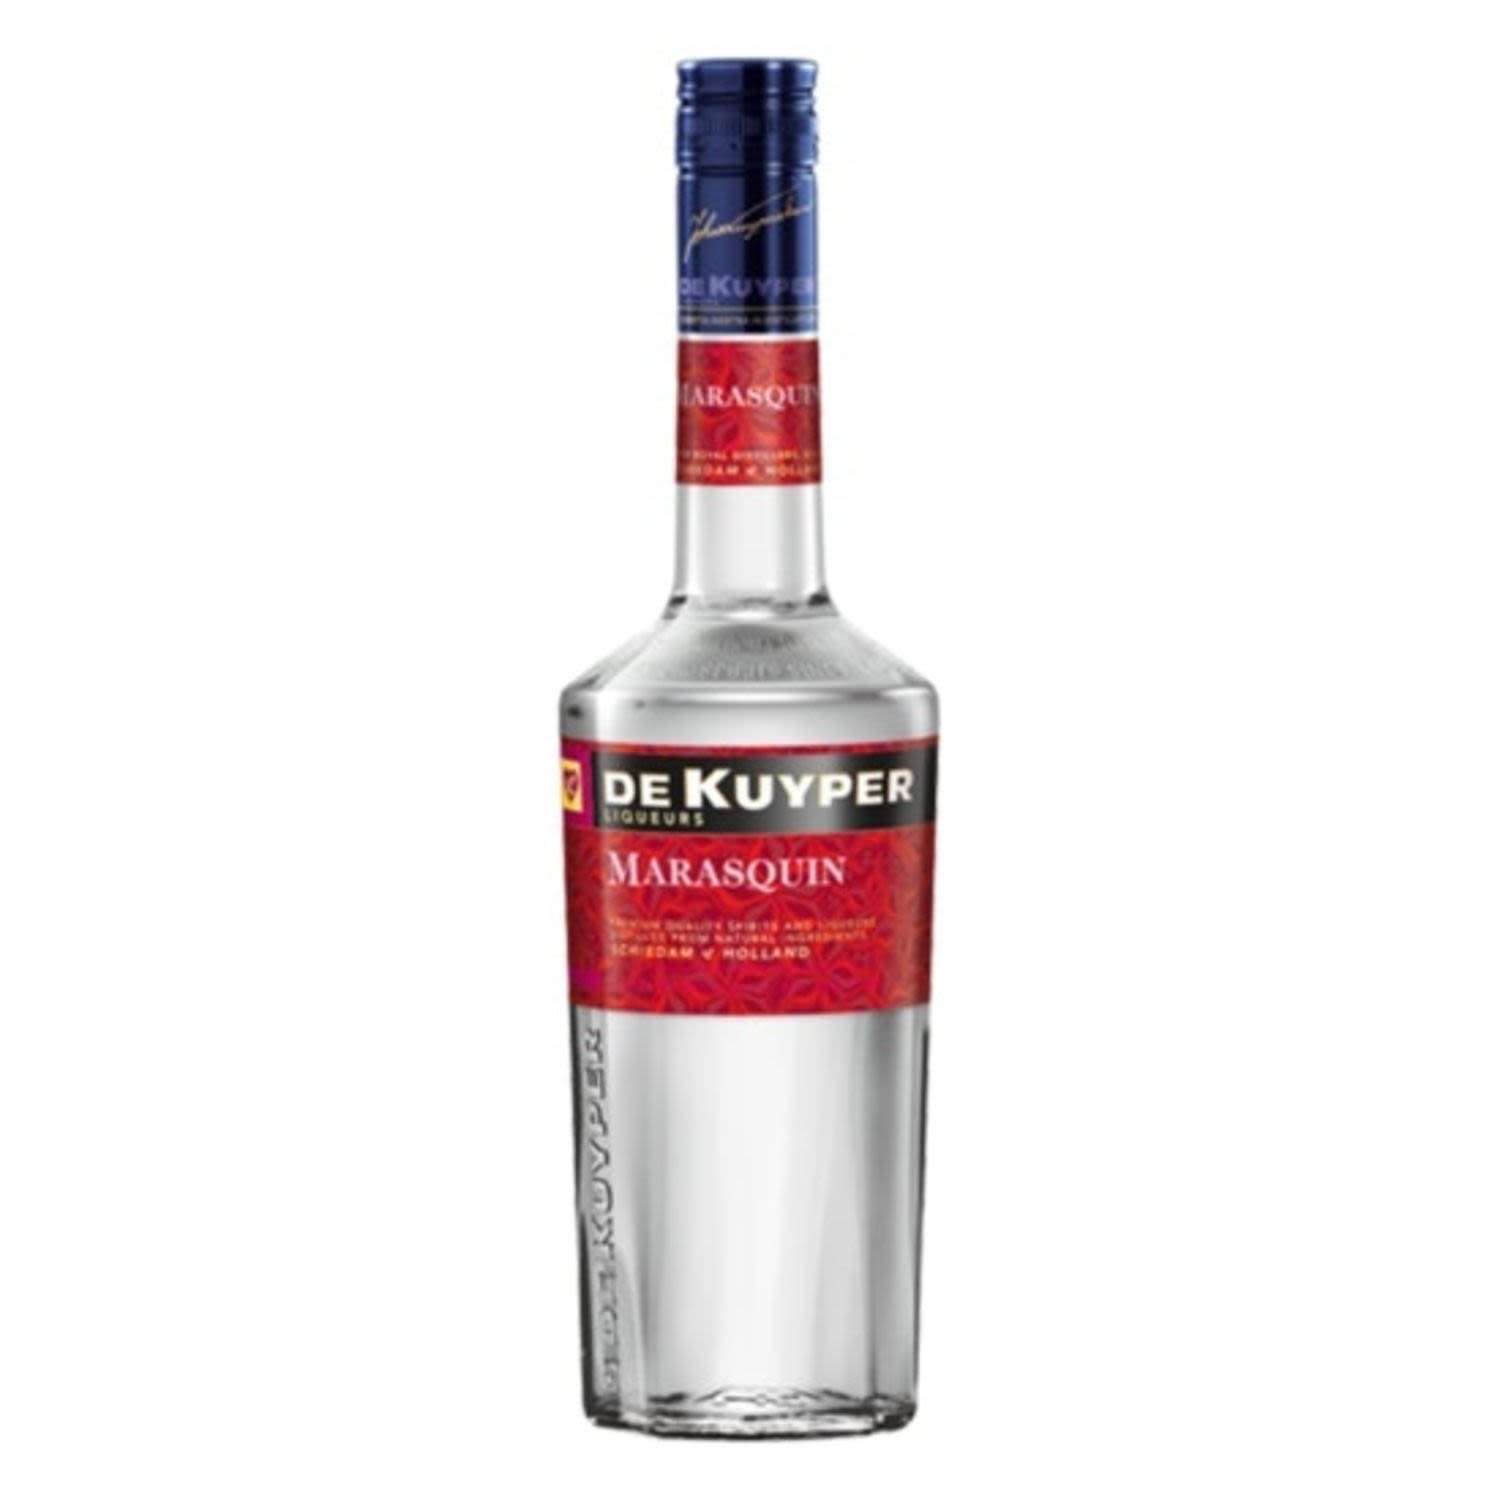 De Kuyper Maraschino 500mL<br /> <br />Alcohol Volume: 30.00%<br /><br />Pack Format: Bottle<br /><br />Standard Drinks: 12</br /><br />Pack Type: Bottle<br /><br />Country of Origin: Jamaica<br />